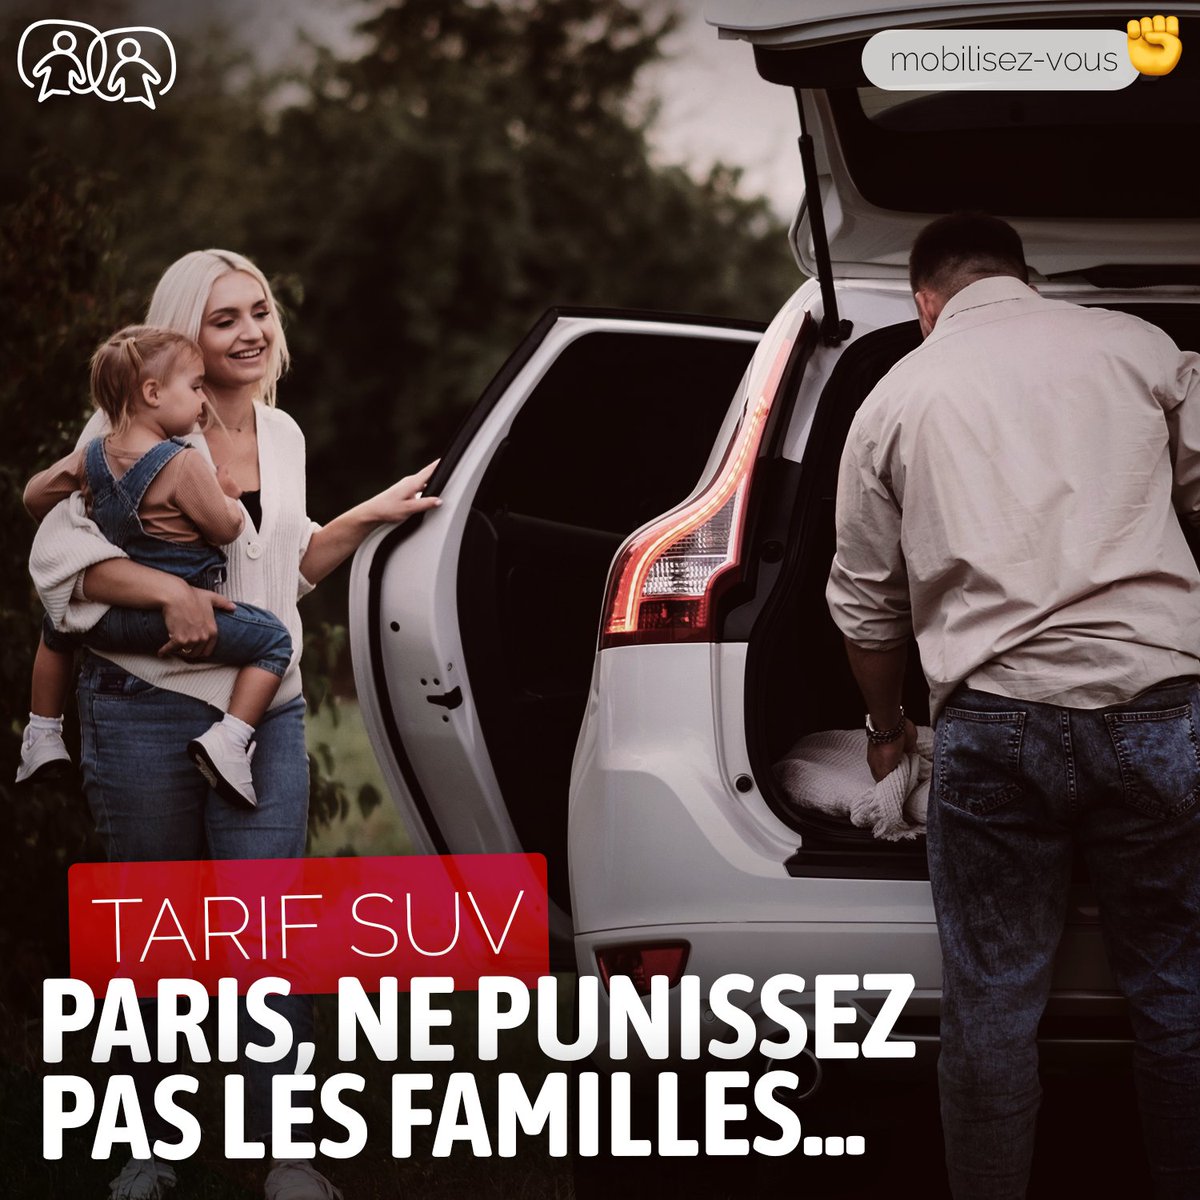 Le Conseil de #Paris s'apprête à voter un tarif SUV… Un coût exorbitant qui pénalisera les familles qui en dépendent.🚗Signez la pétition du Collectif Mobilités Solidaires Paris pour exiger une exemption pour les familles et une tarification plus juste➡️mesops.com/TarifSUV